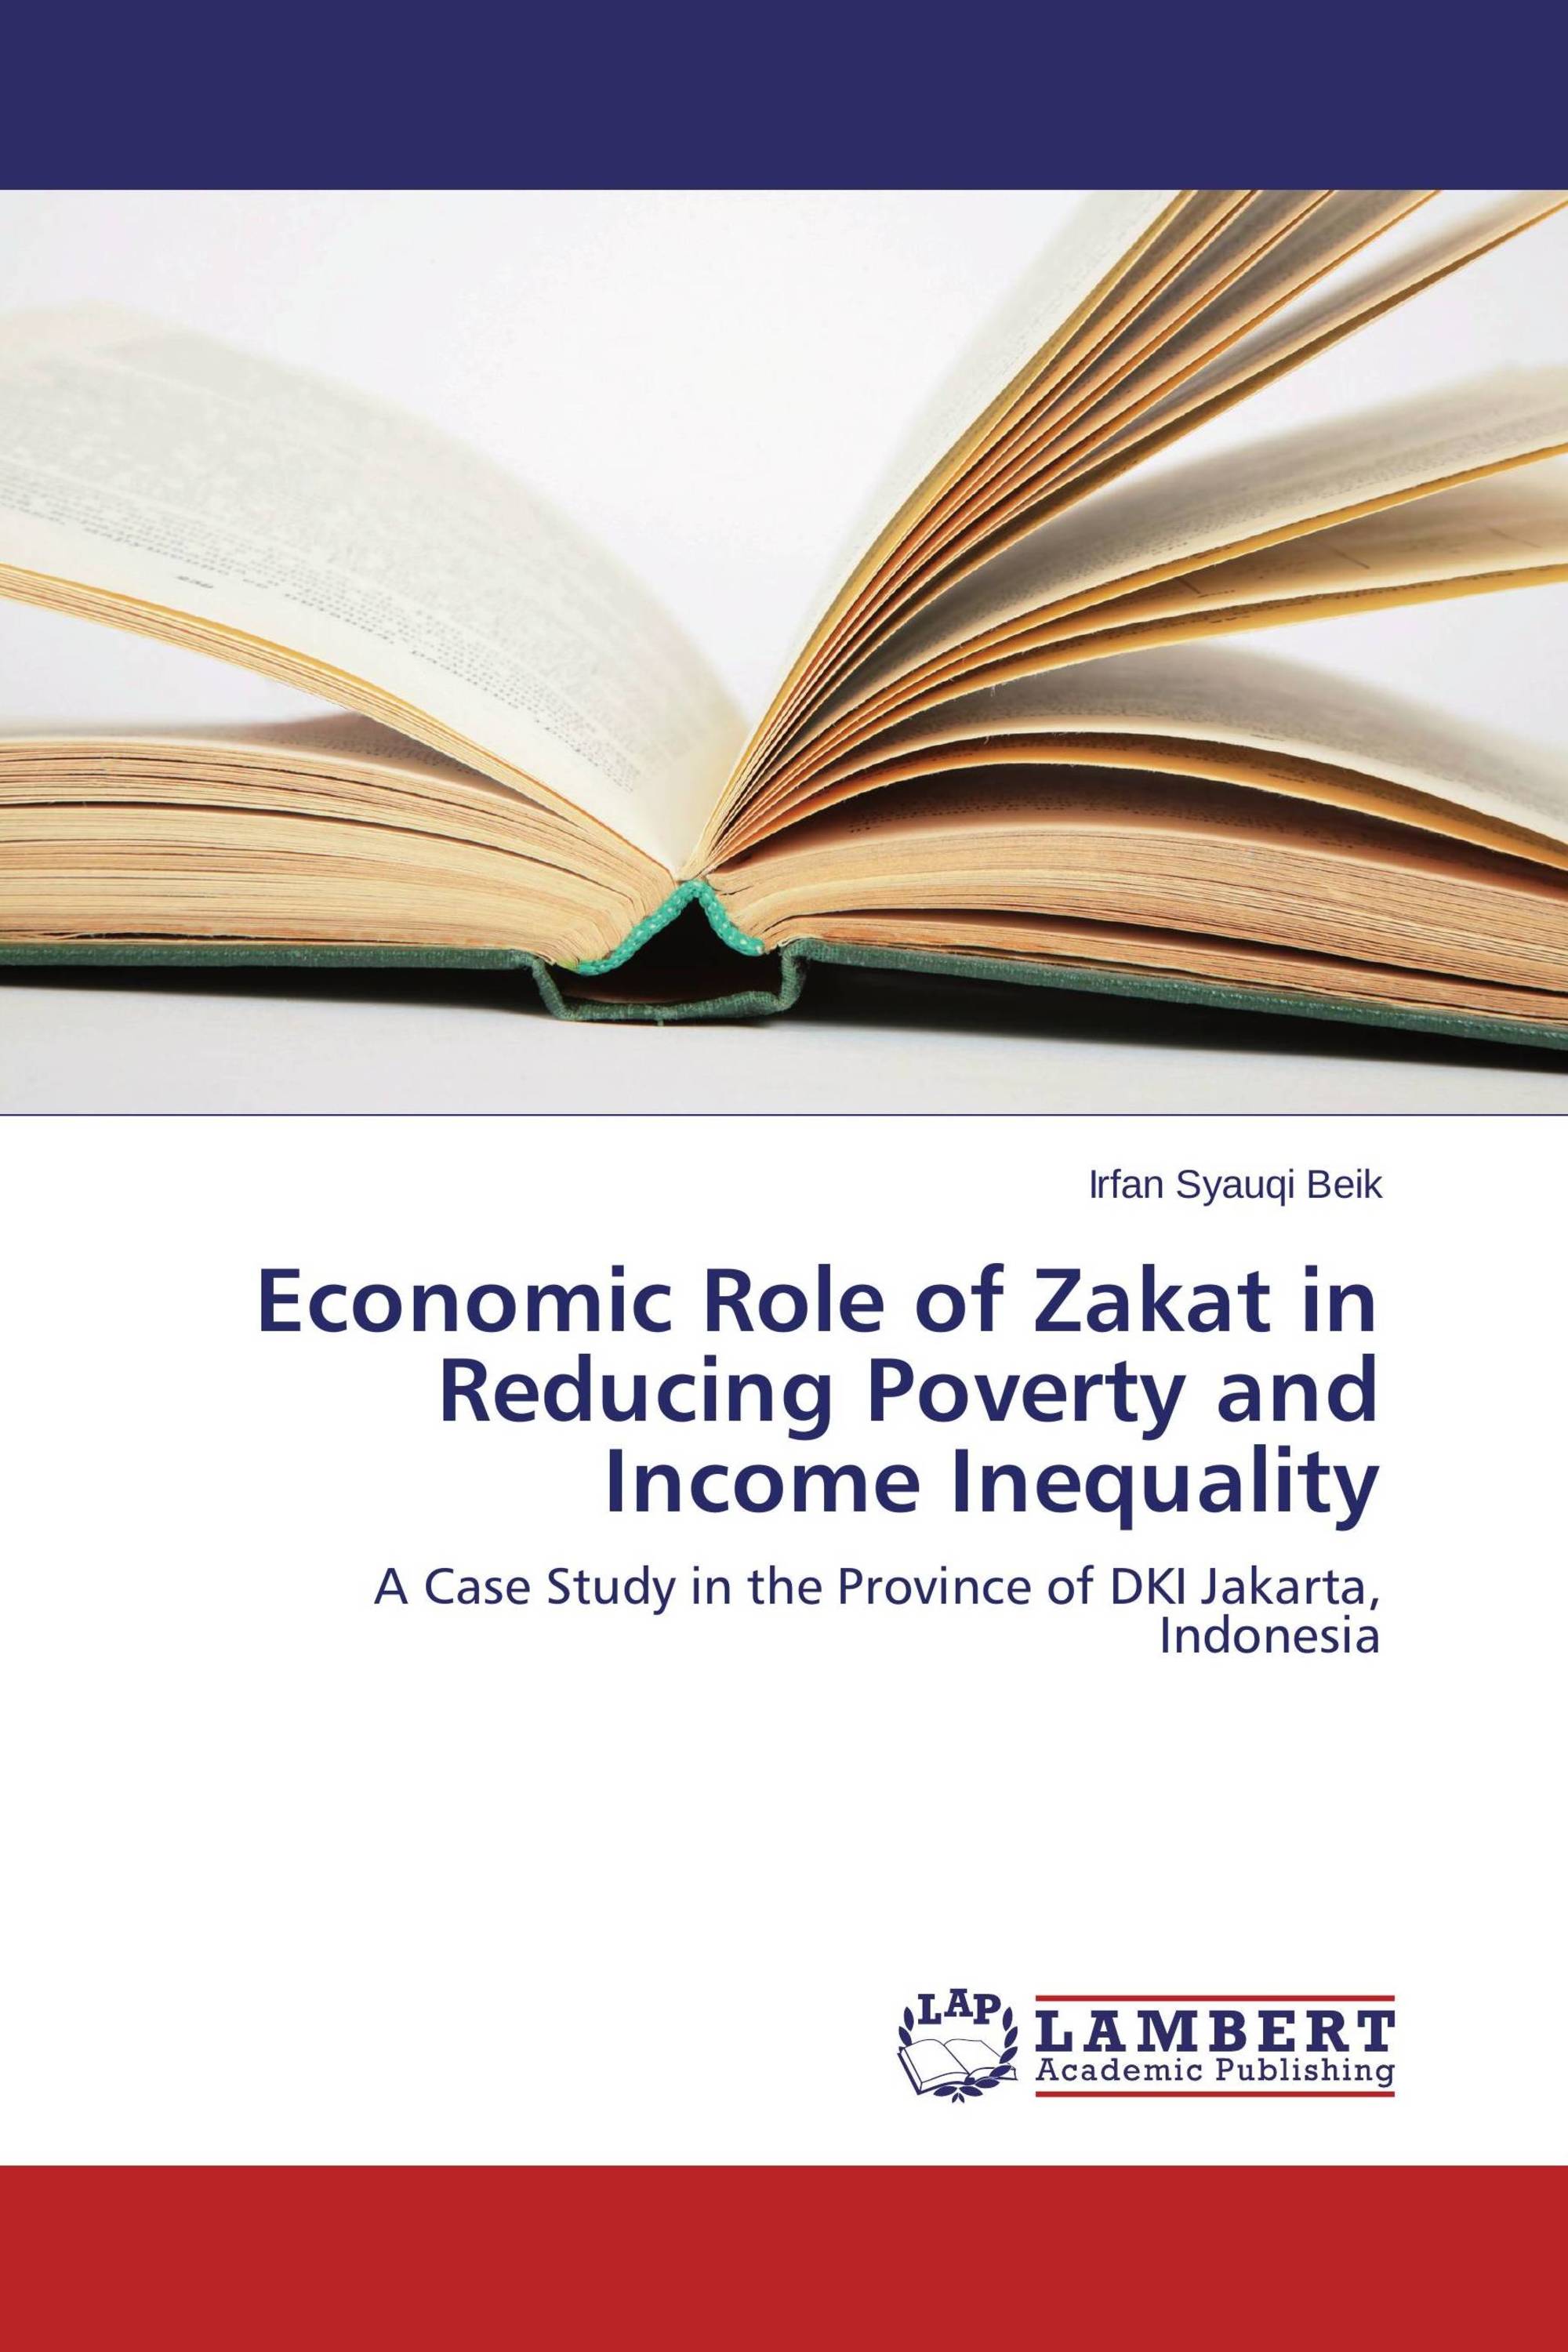 a case study on zakat